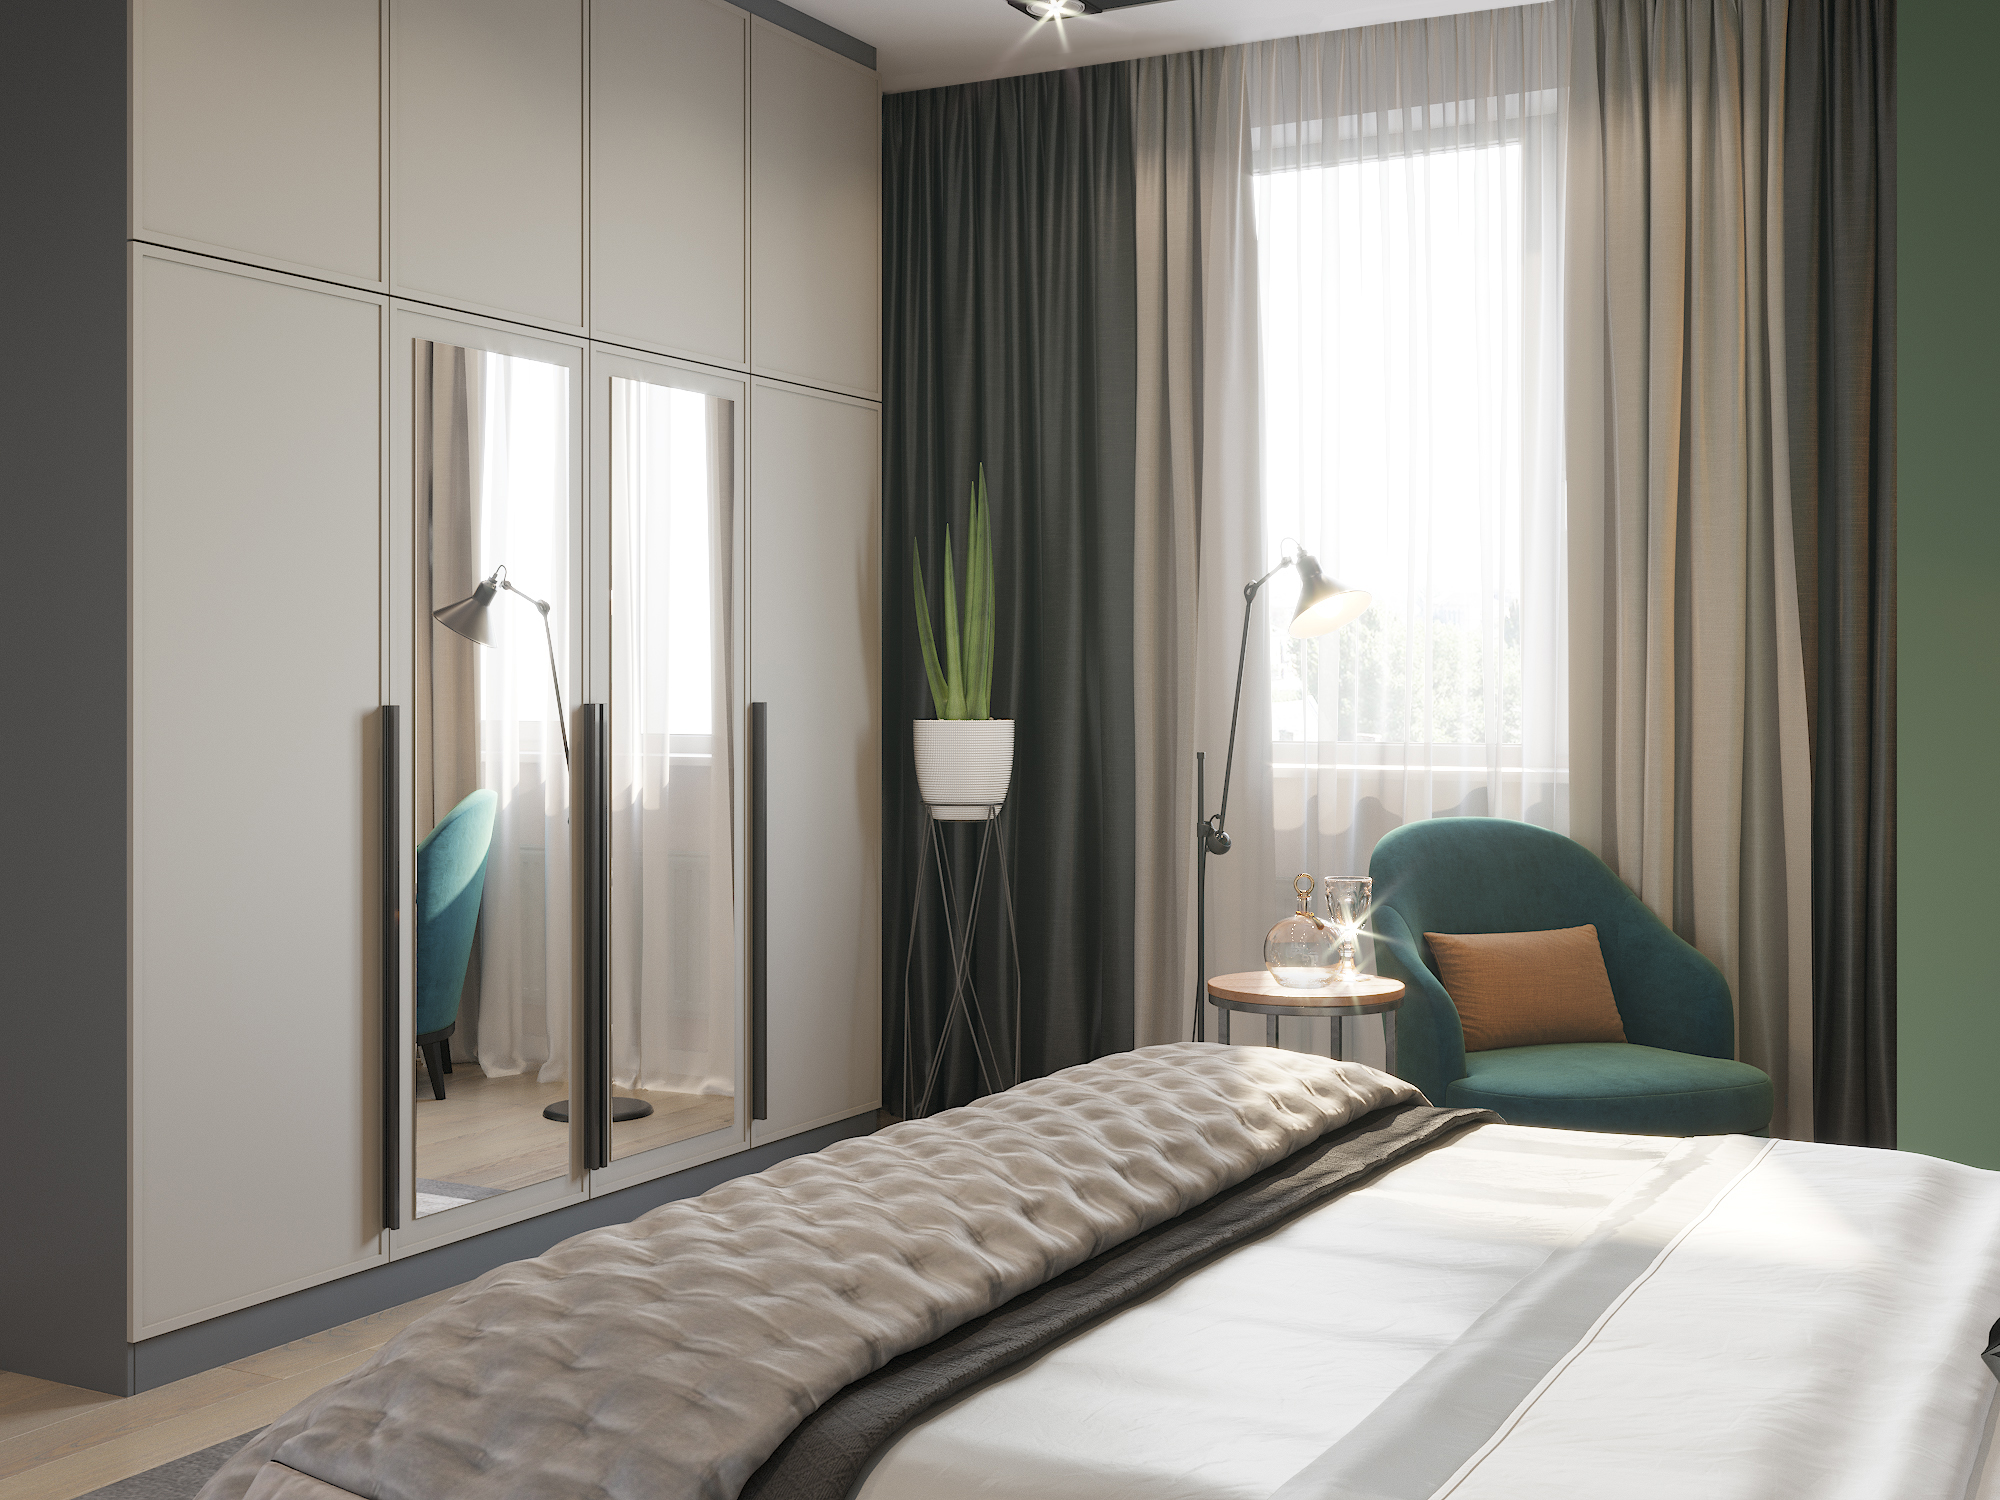 imagen de Dormitorio en tonos esmeralda. en 3d max corona render